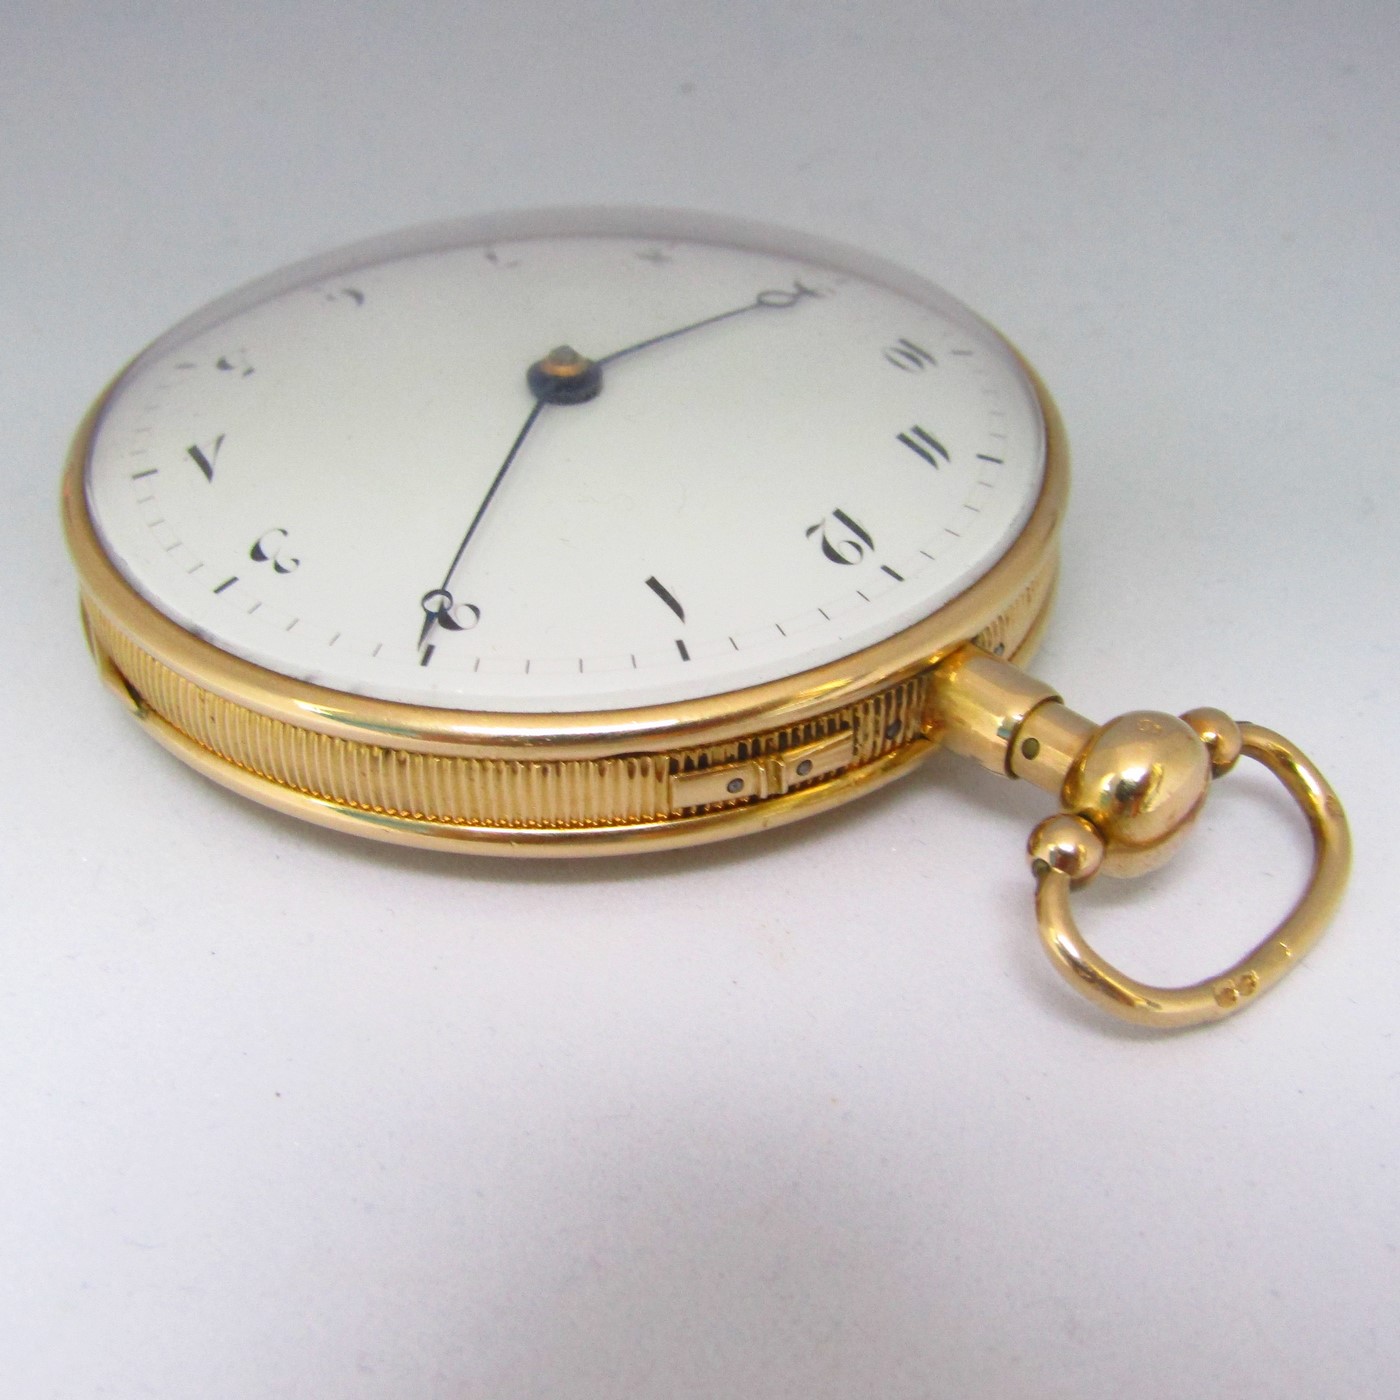 Reloj francés de Bolsillo para caballero, lepine, repetición horas y cuartos. Oro 18k. Ca. 1800.